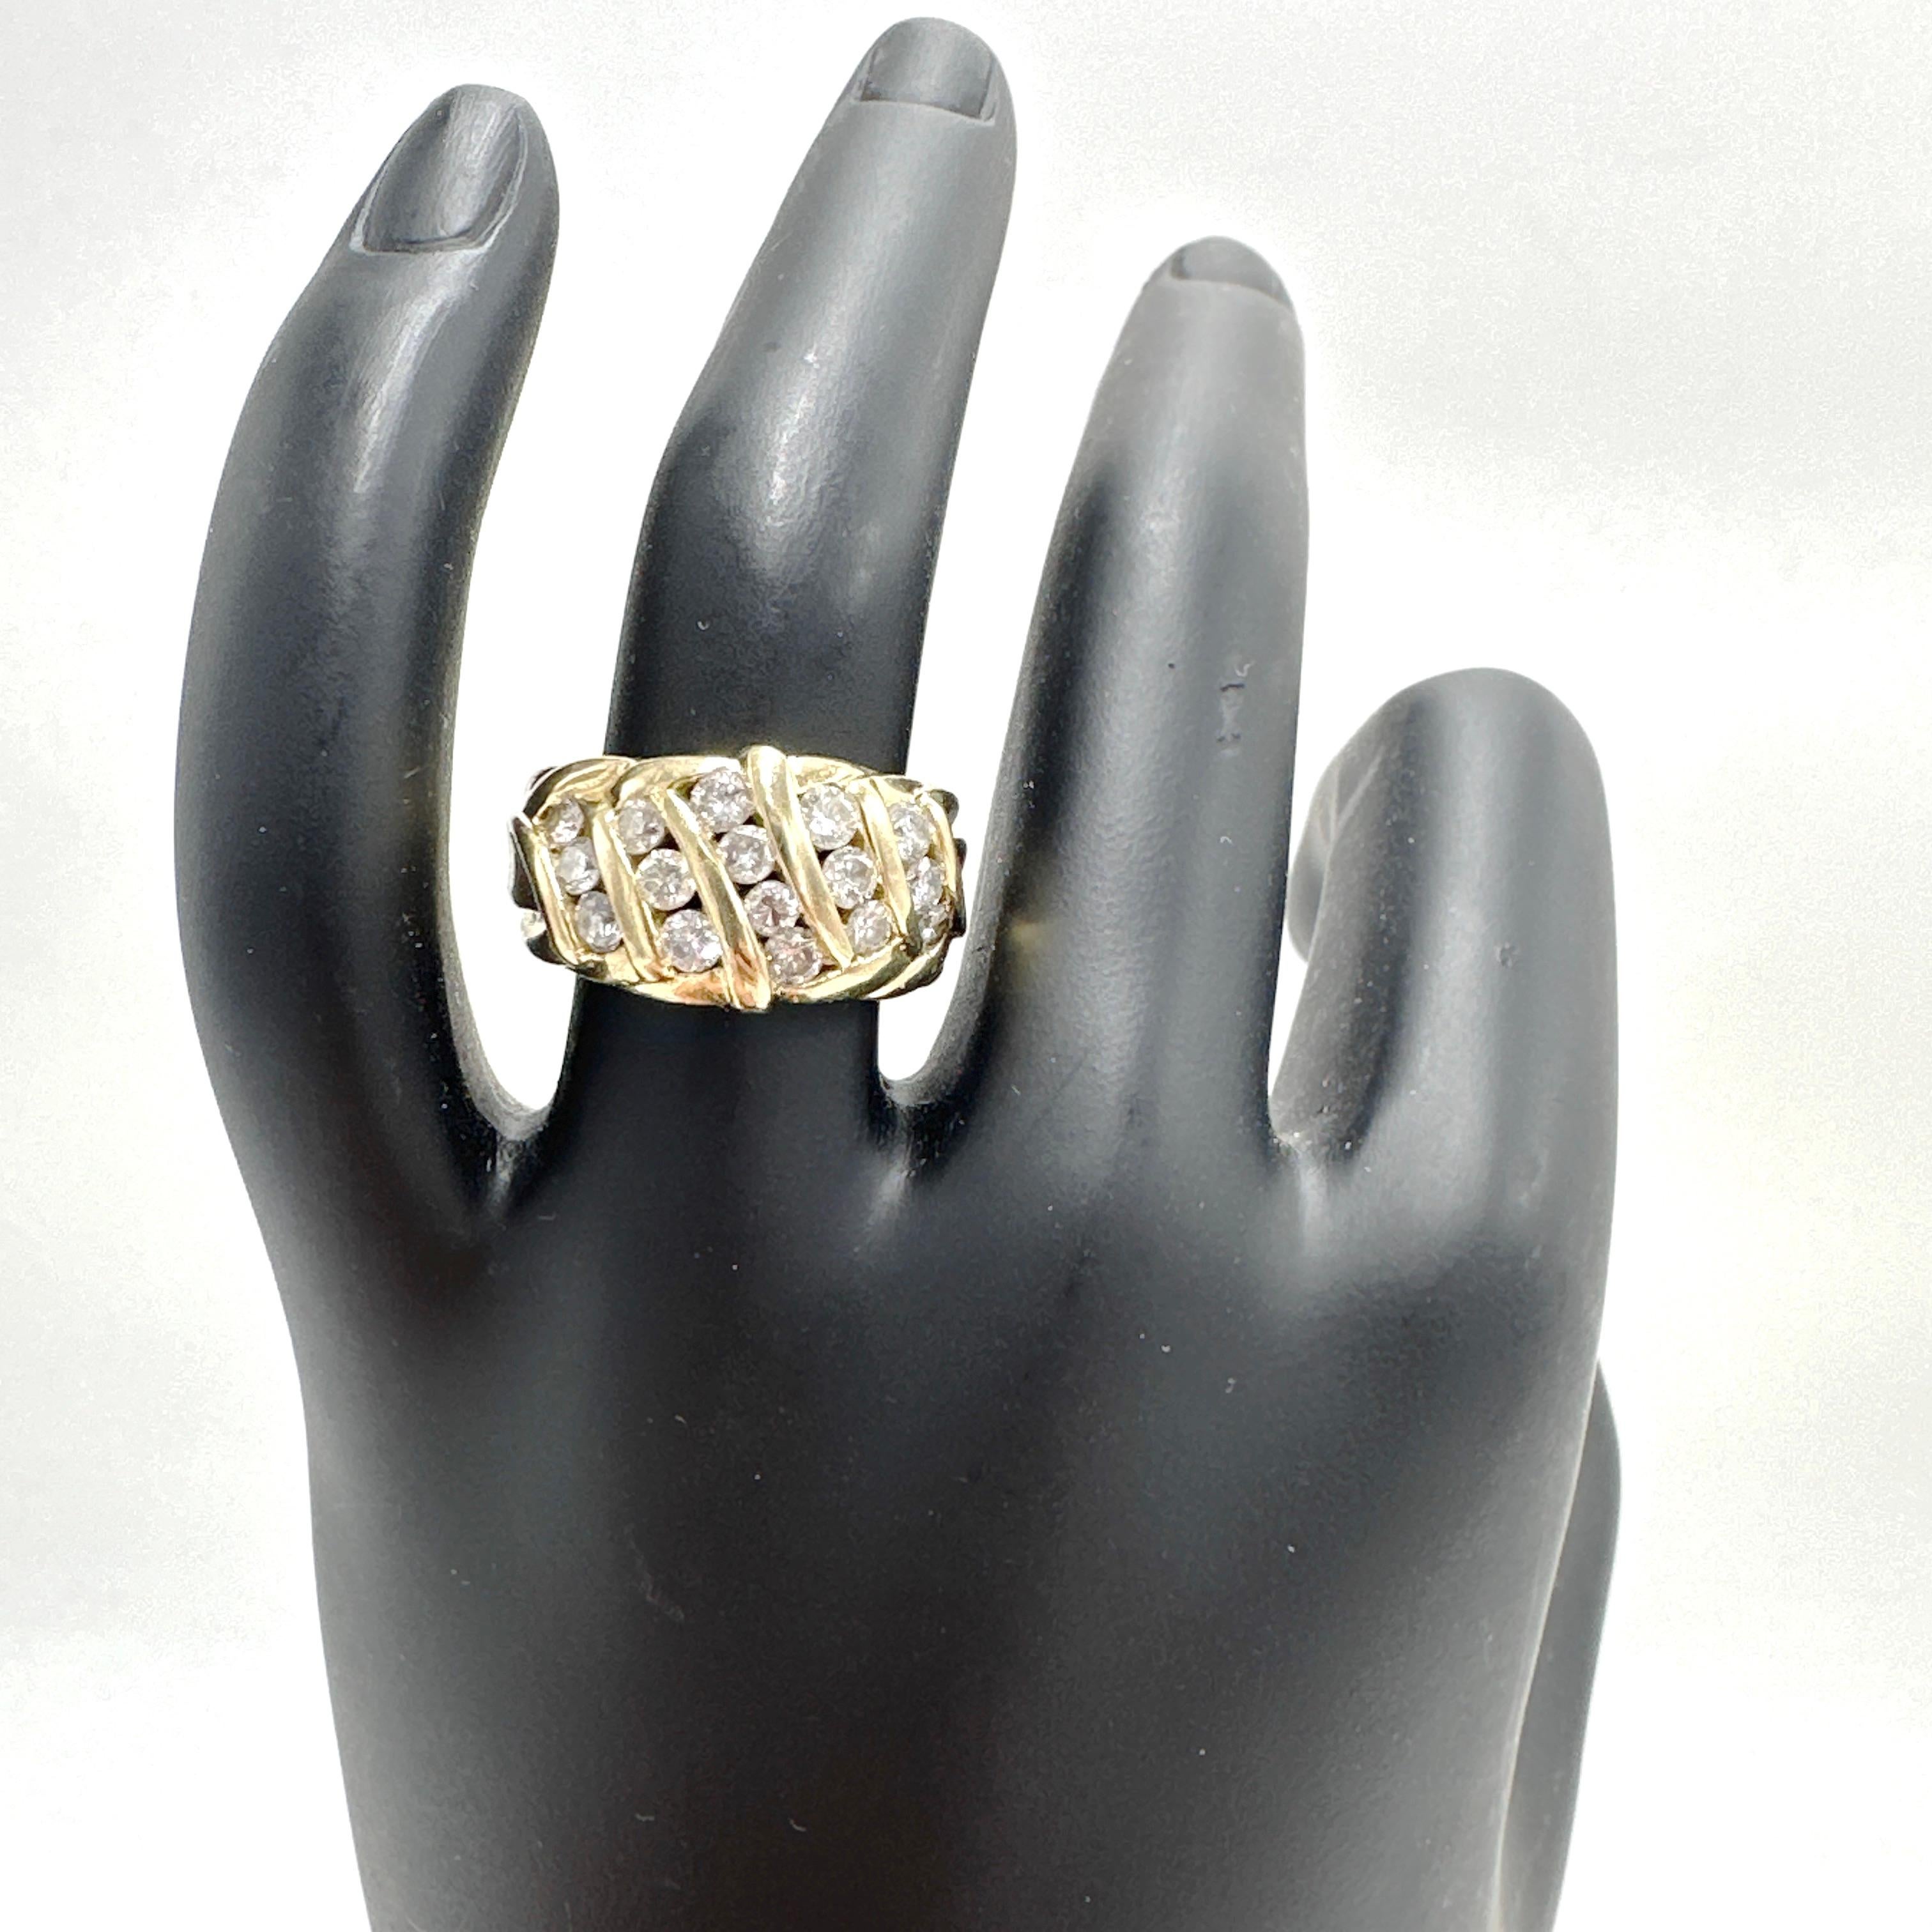 Hier ist eine schöne 14k Gelbgold Natural Diamond Ring 0,98TCW. 

Dieser Ring enthält 16 runde Brillanten von 0,05 bis 0,08 Karat mit einer Größe von jeweils ca. 2,40 x 2,80 mm und einem geschätzten Gesamtgewicht von 0,98 TCW. Die Diamanten haben